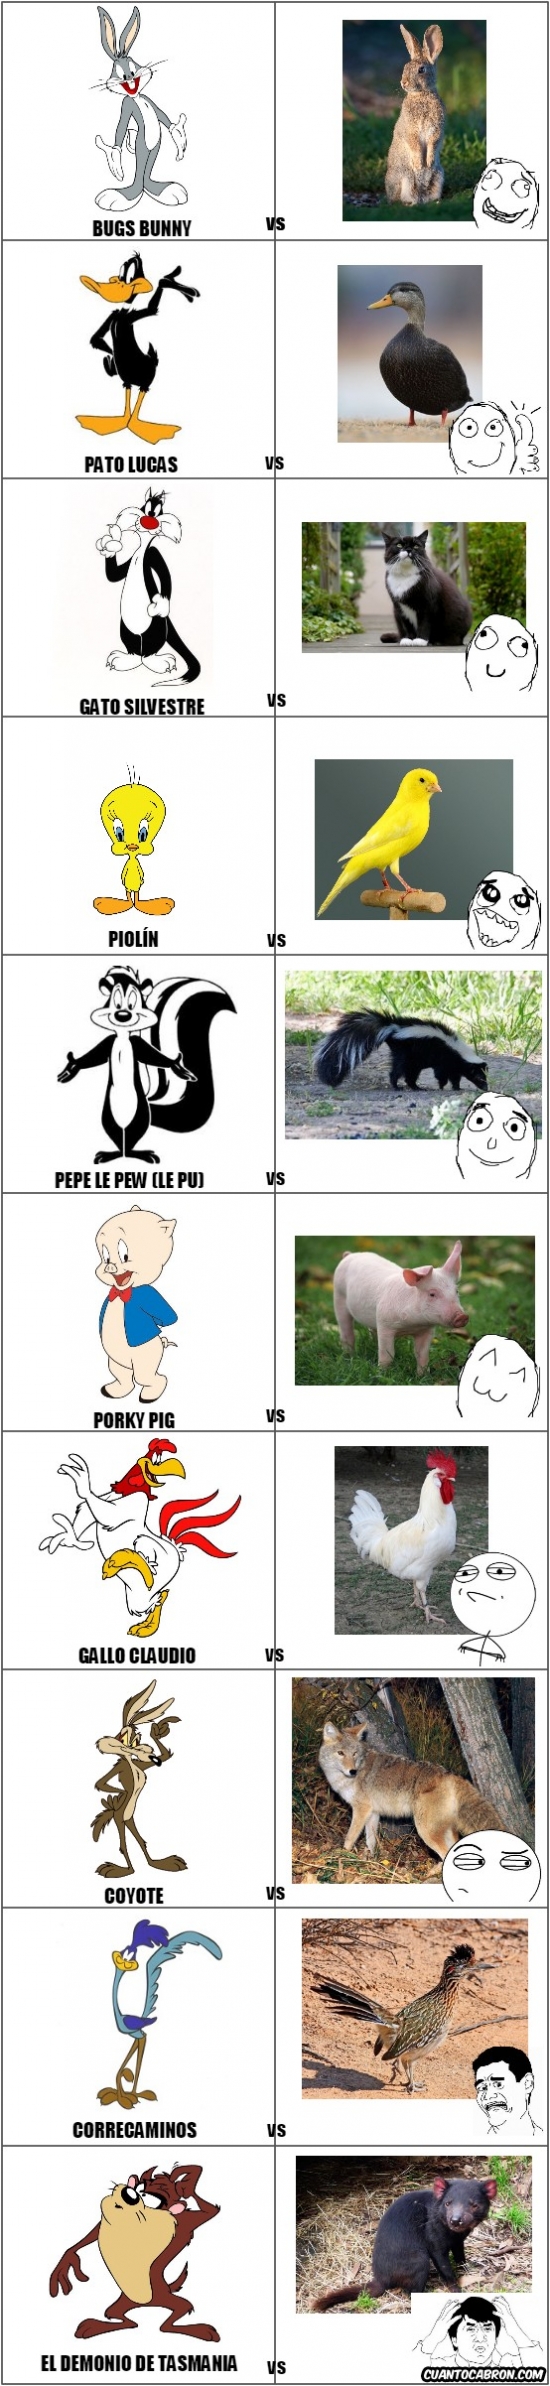 Otros - No siempre son razonables los parecidos de los personajes animados con los animales que representan